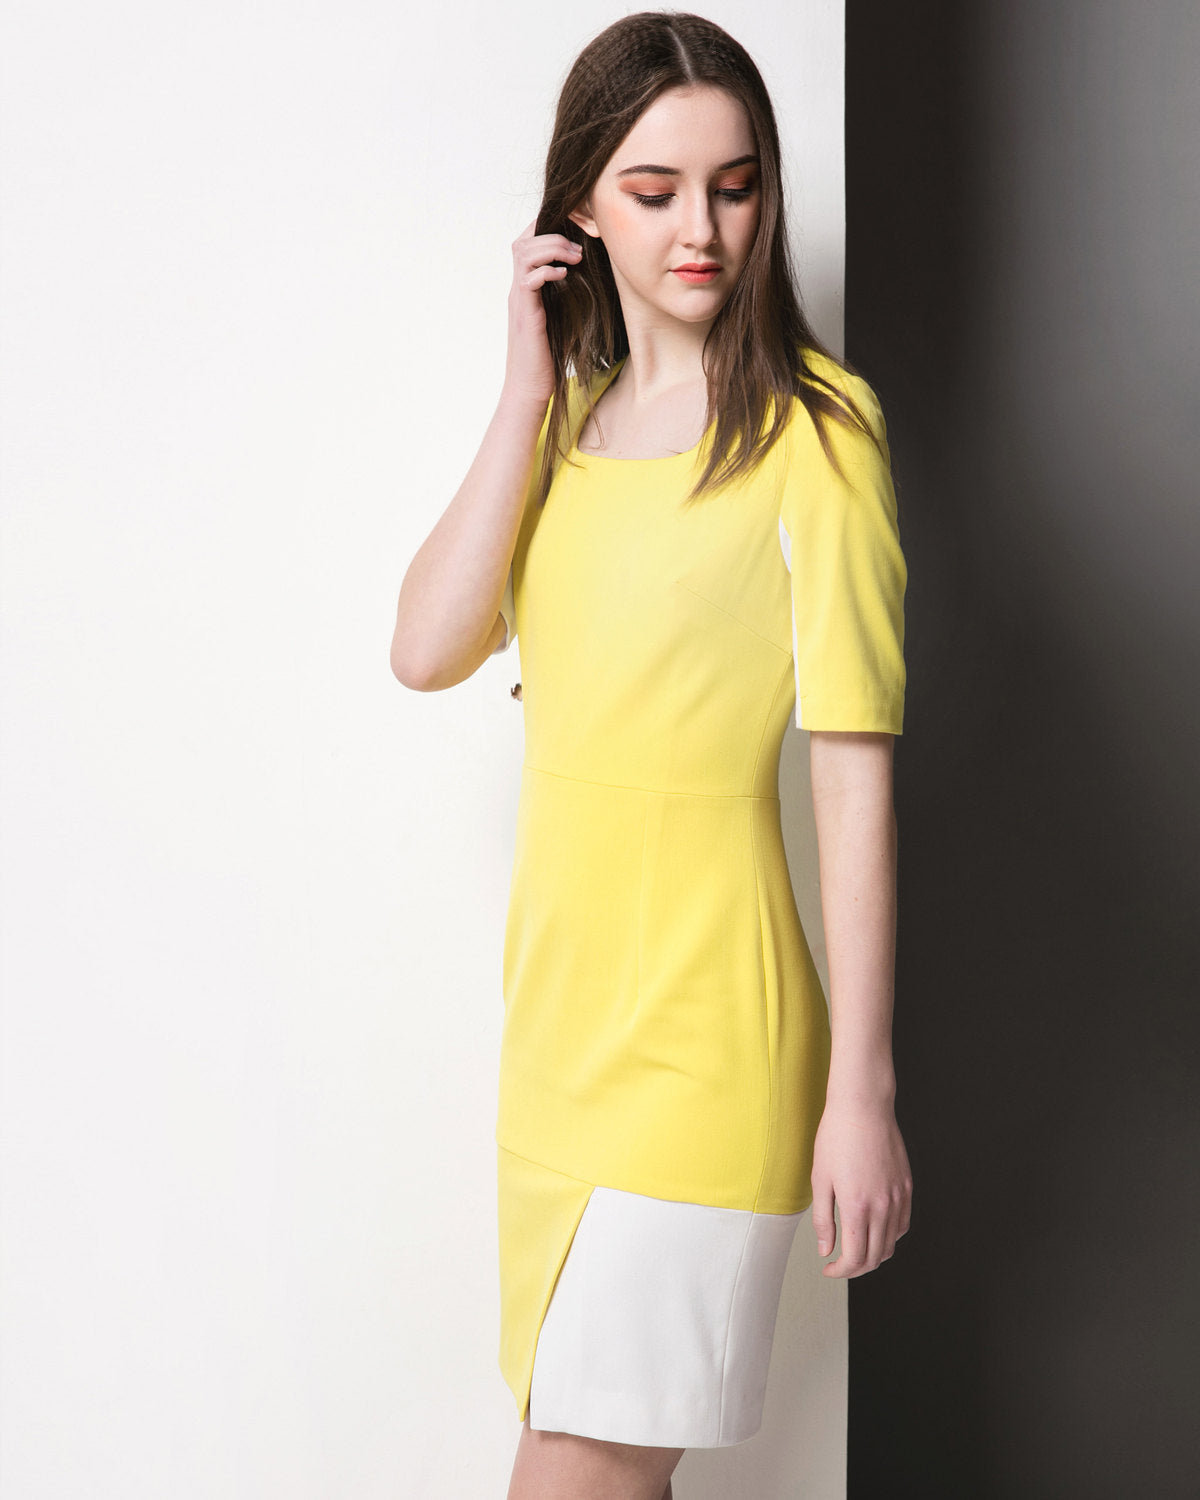 Custom made Custom made dress duchess wimbledon dress Kate Middleton dress Mod 60s' dress yellow colorblock dress work shiftdress